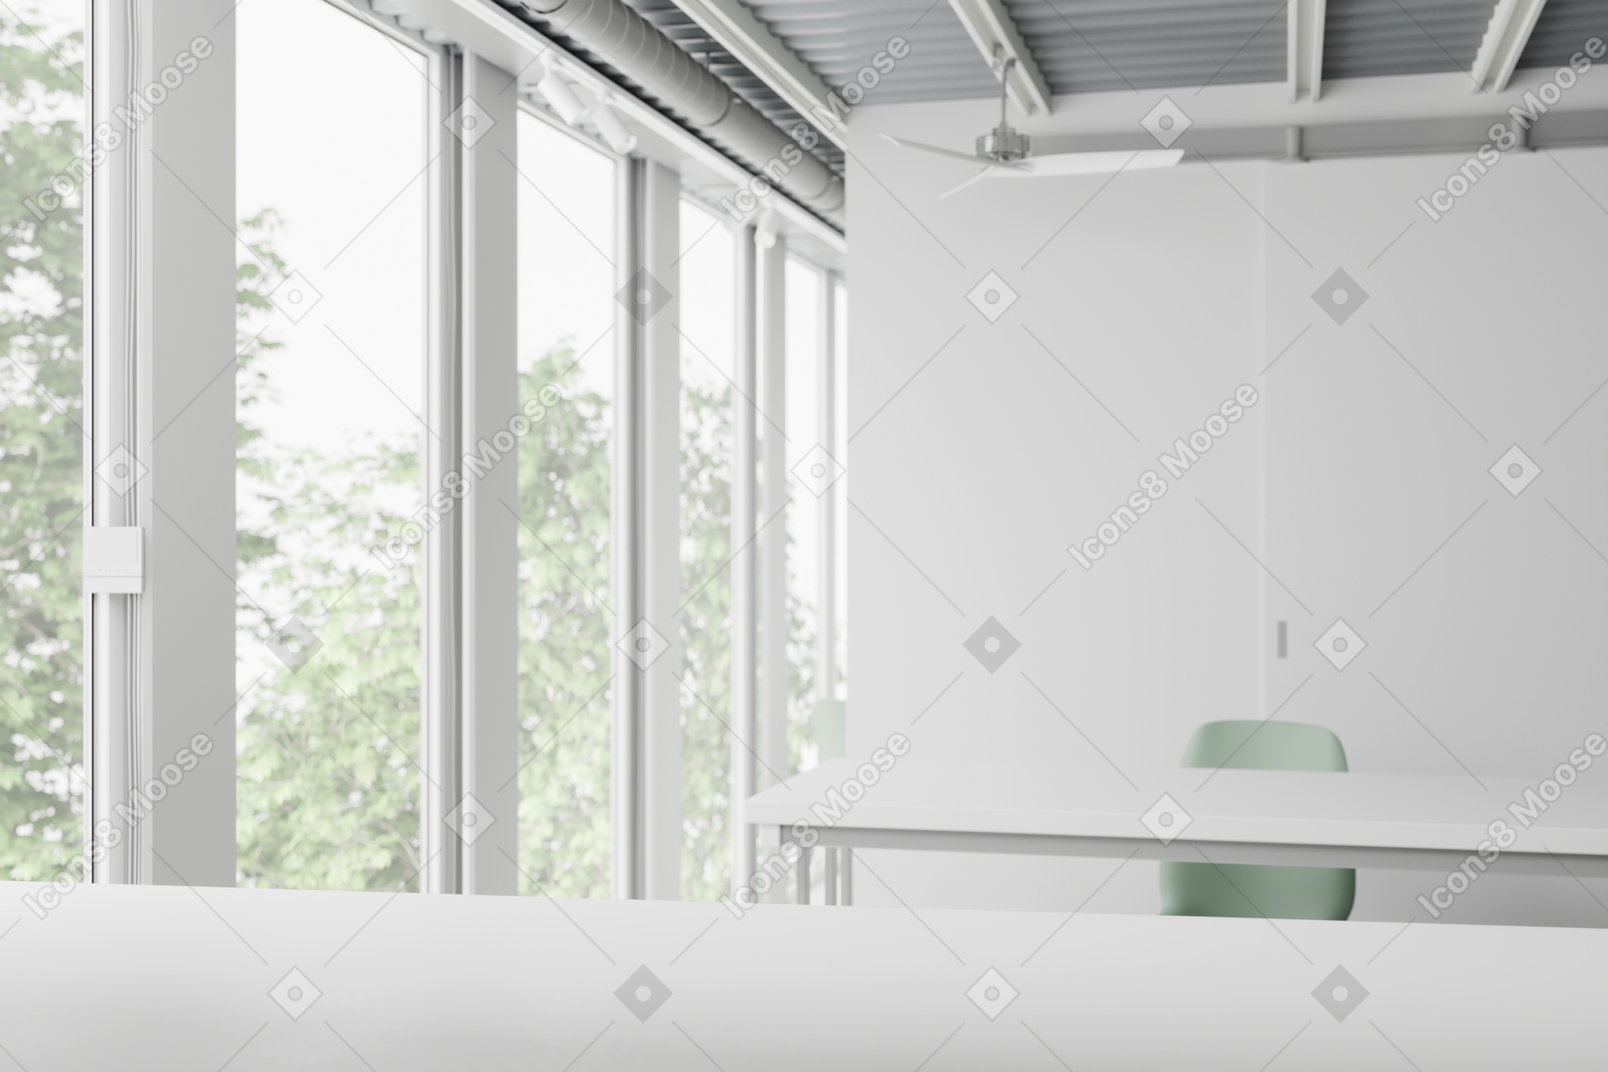 Salle de classe avec des bureaux blancs